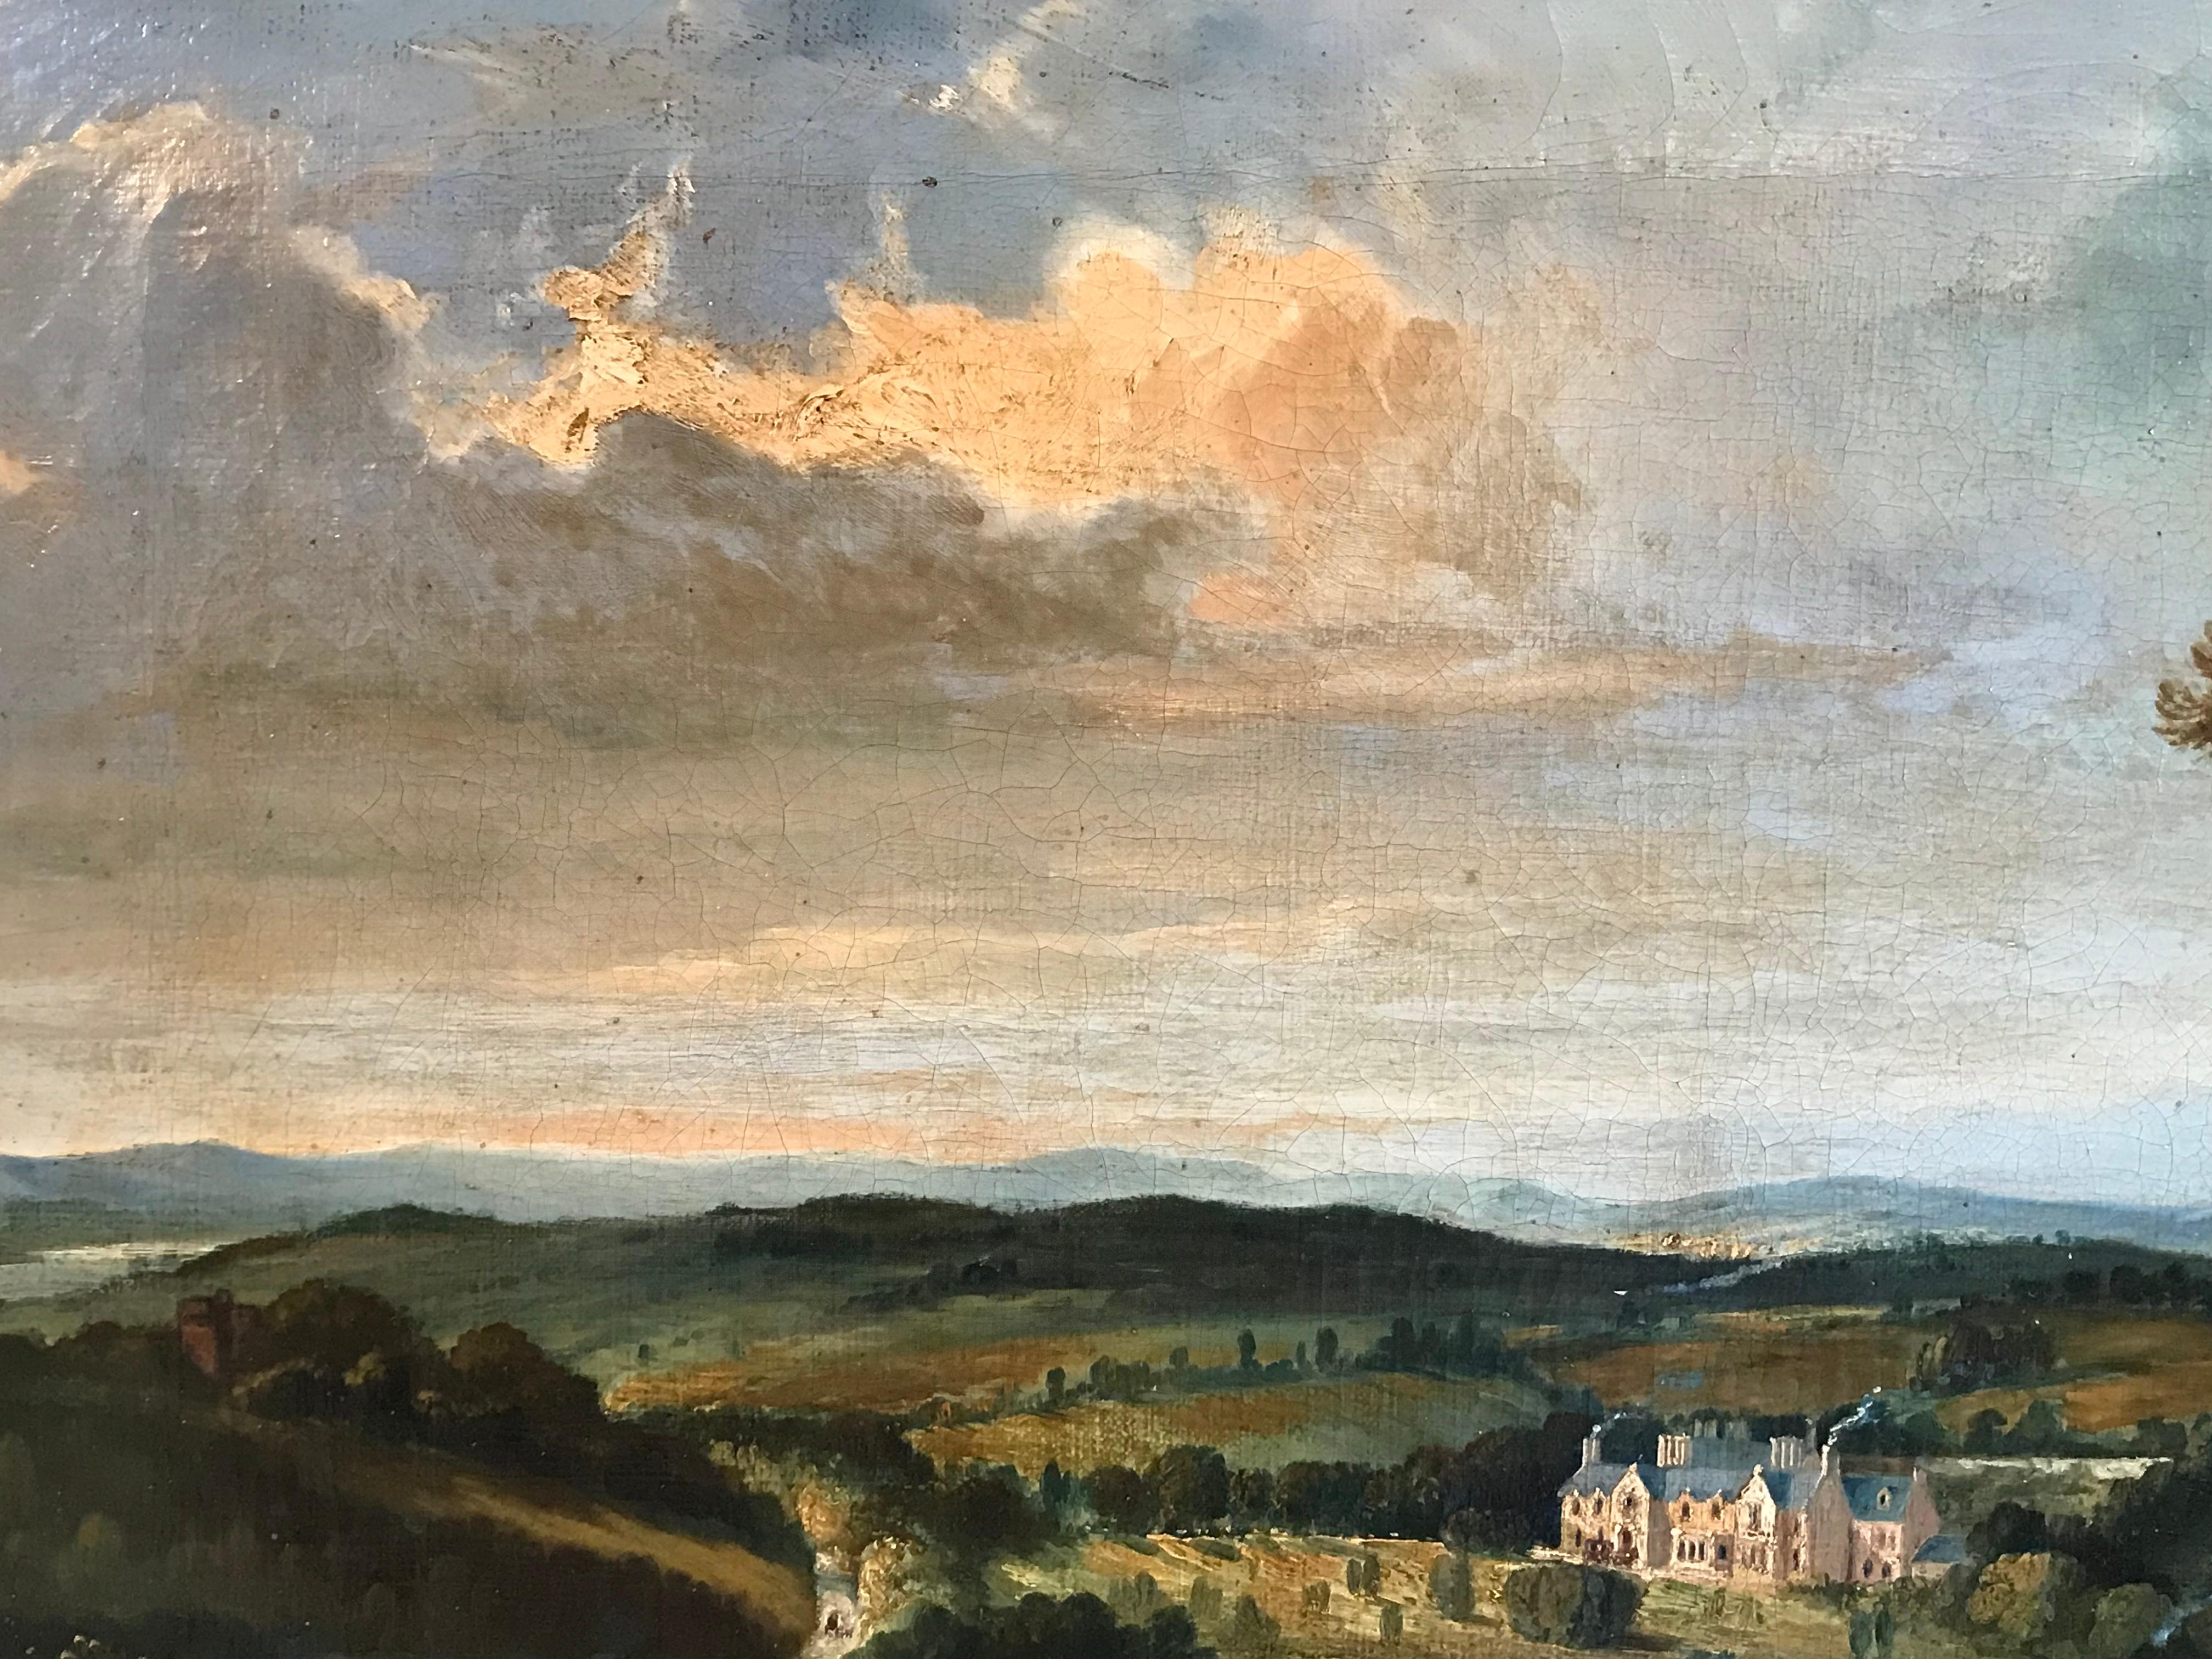 18th century landscape painters